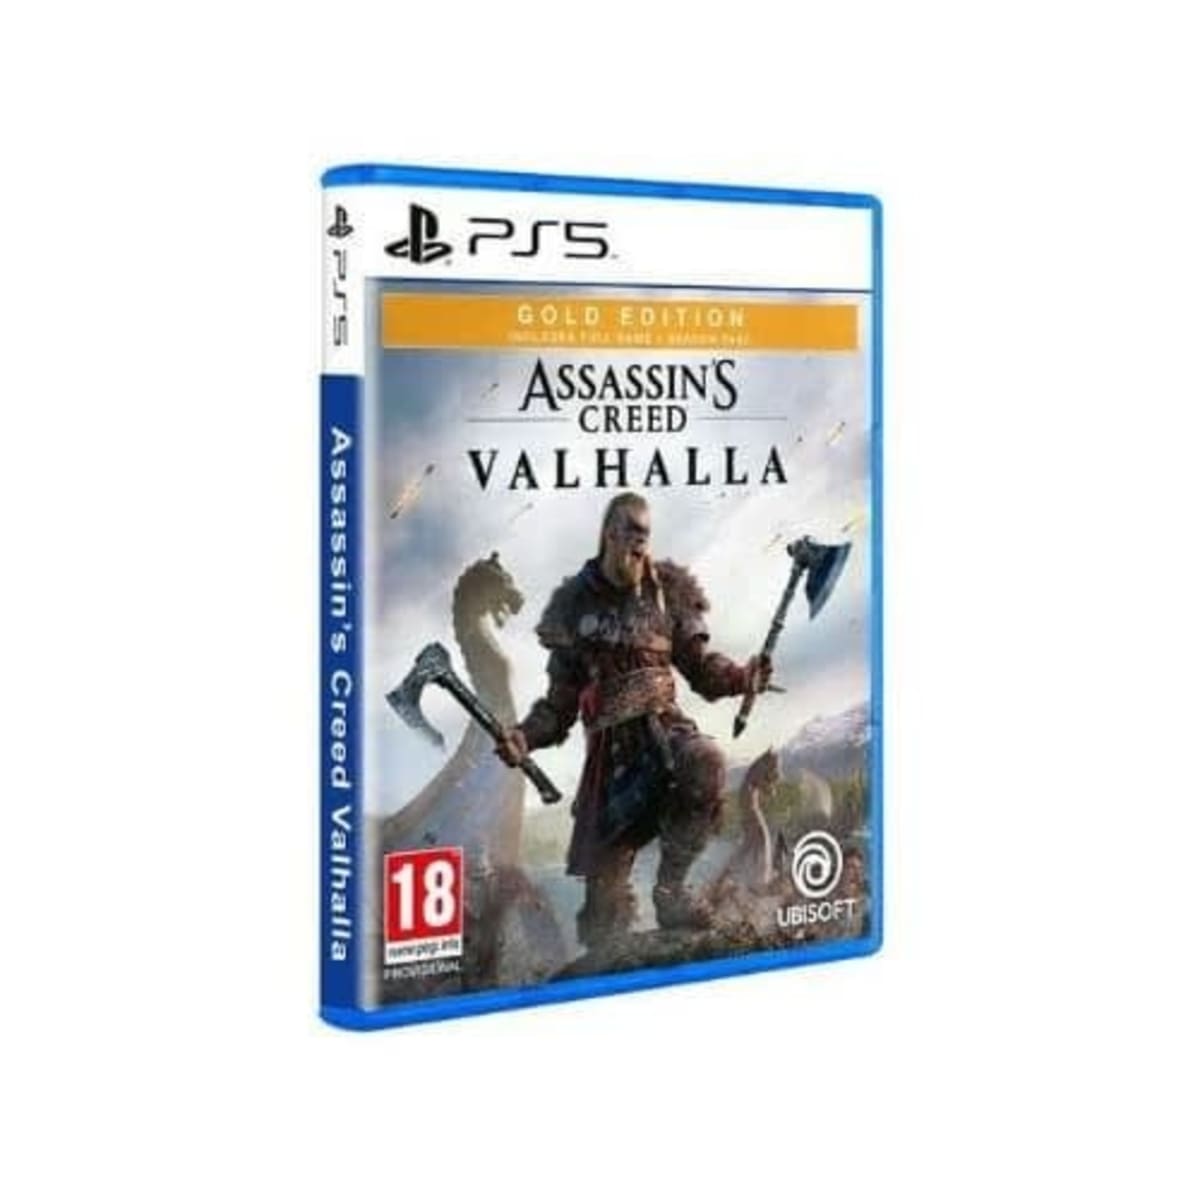 Assassins Creed Valhalla PS5 